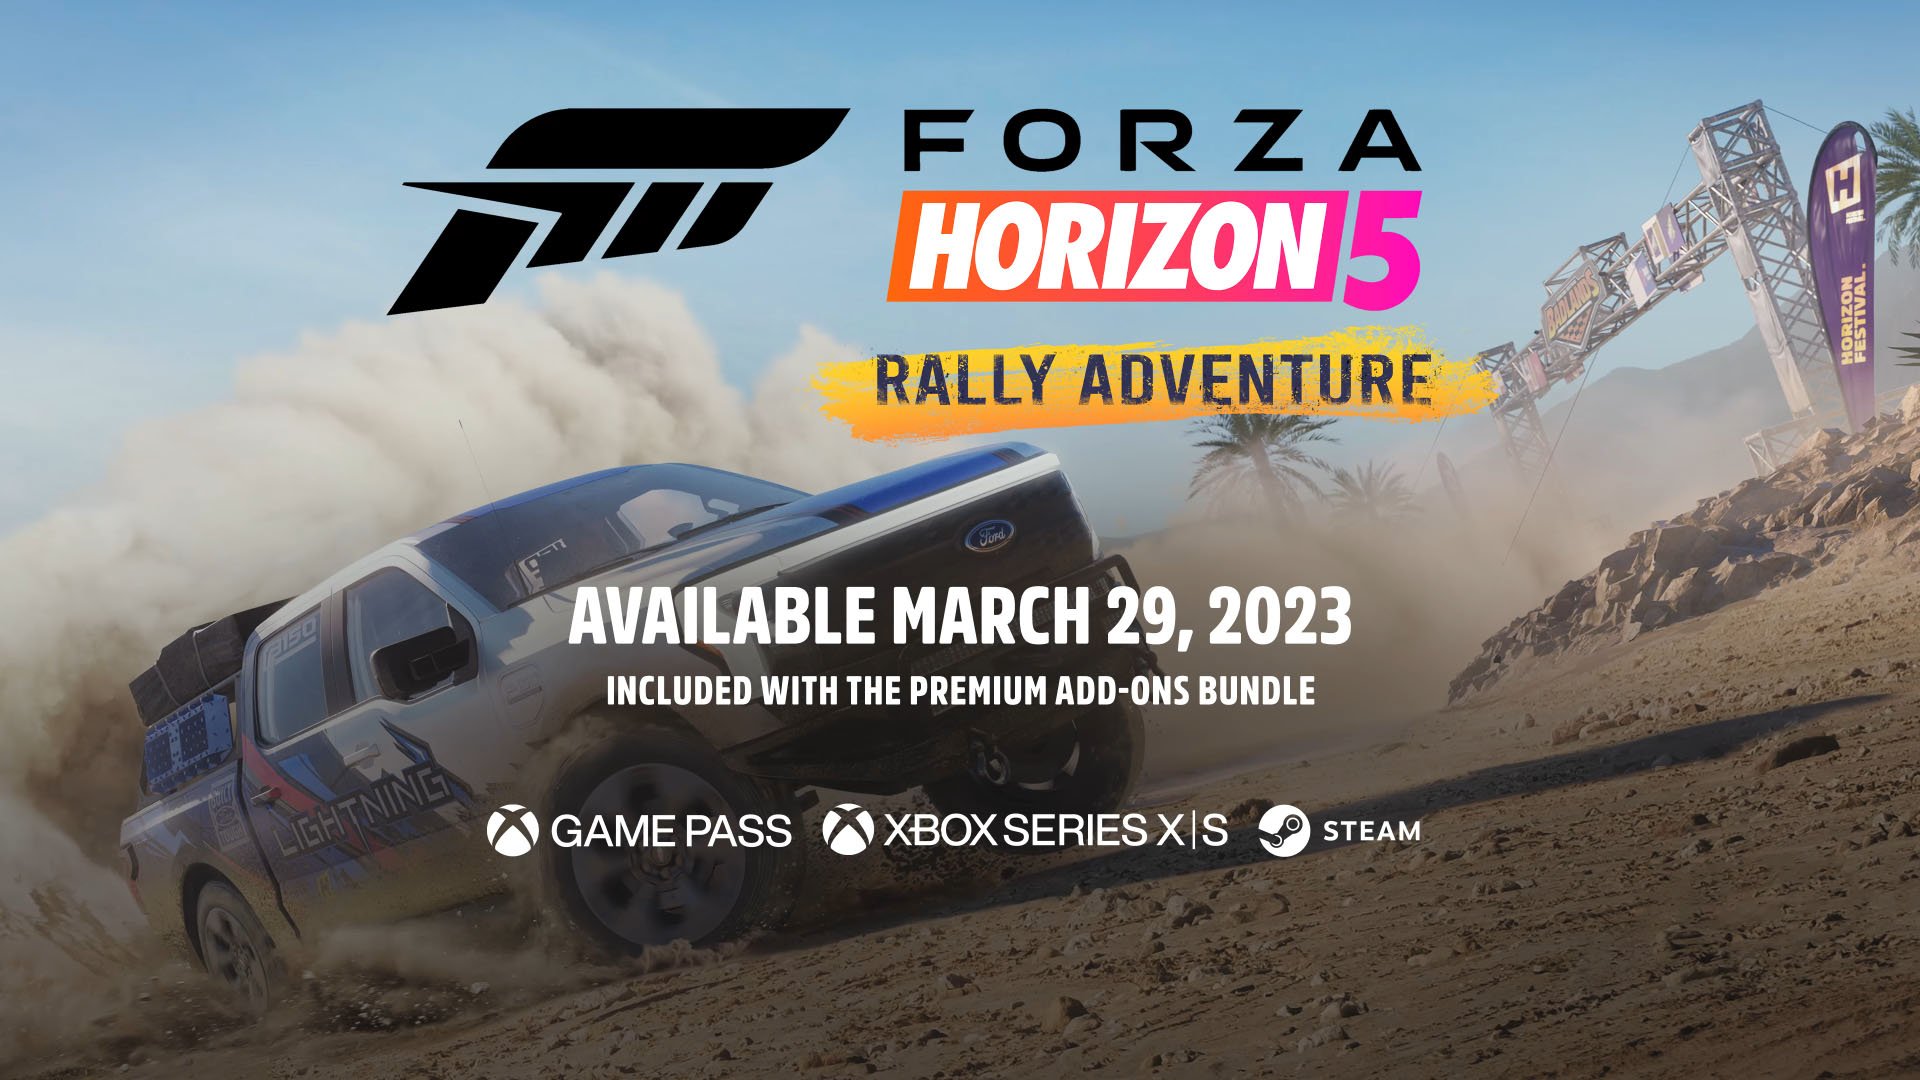 Forza Horizon 5: lista com os 491 carros confirmados no jogo de Xbox